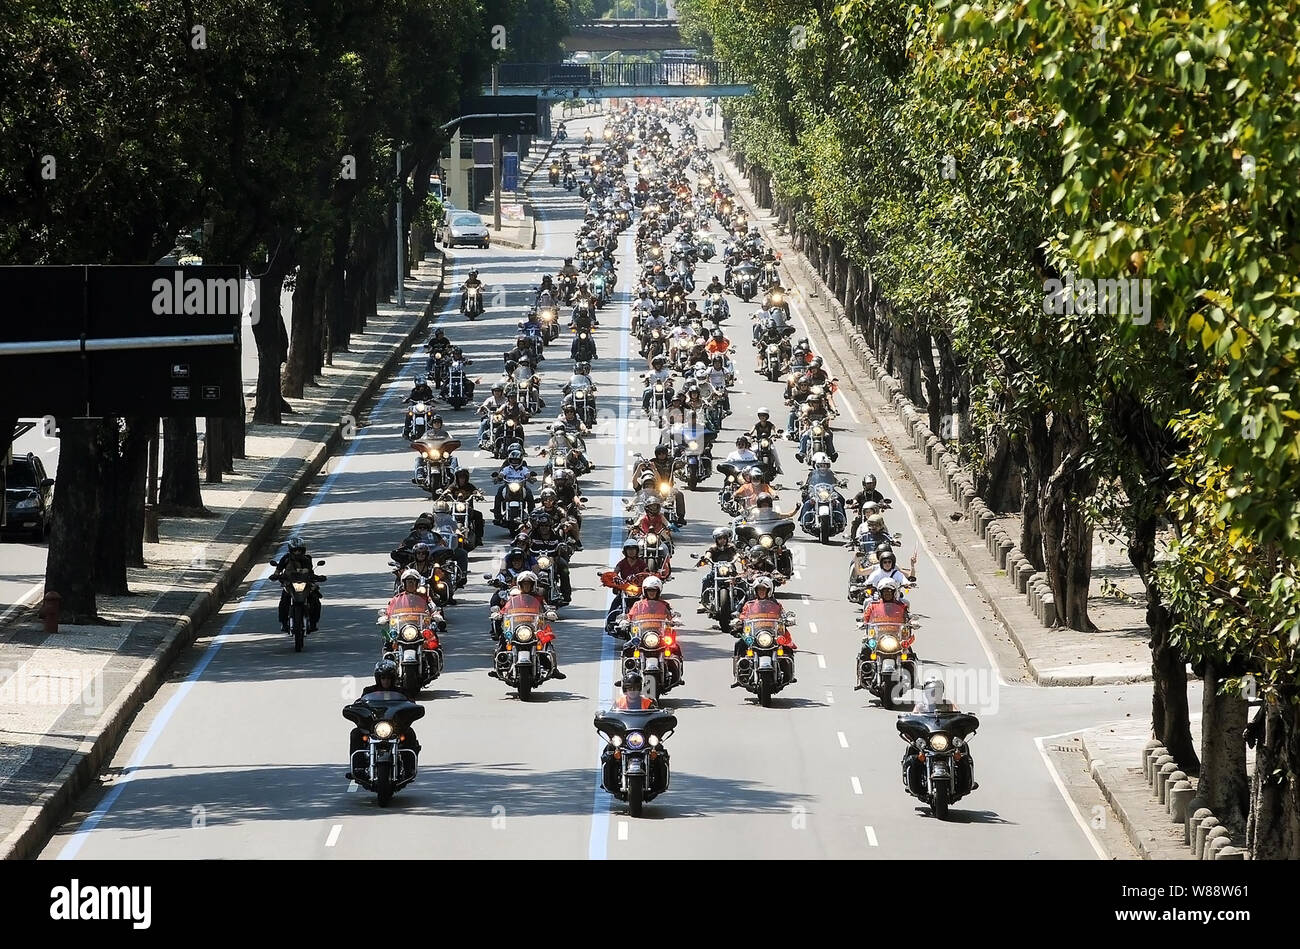 Río de Janeiro, 11 de diciembre de 2009. Los motociclistas con sus motos Harley Davidson rotar a través de las calles del centro de la ciudad de Río de Janeiro, Brasil Foto de stock